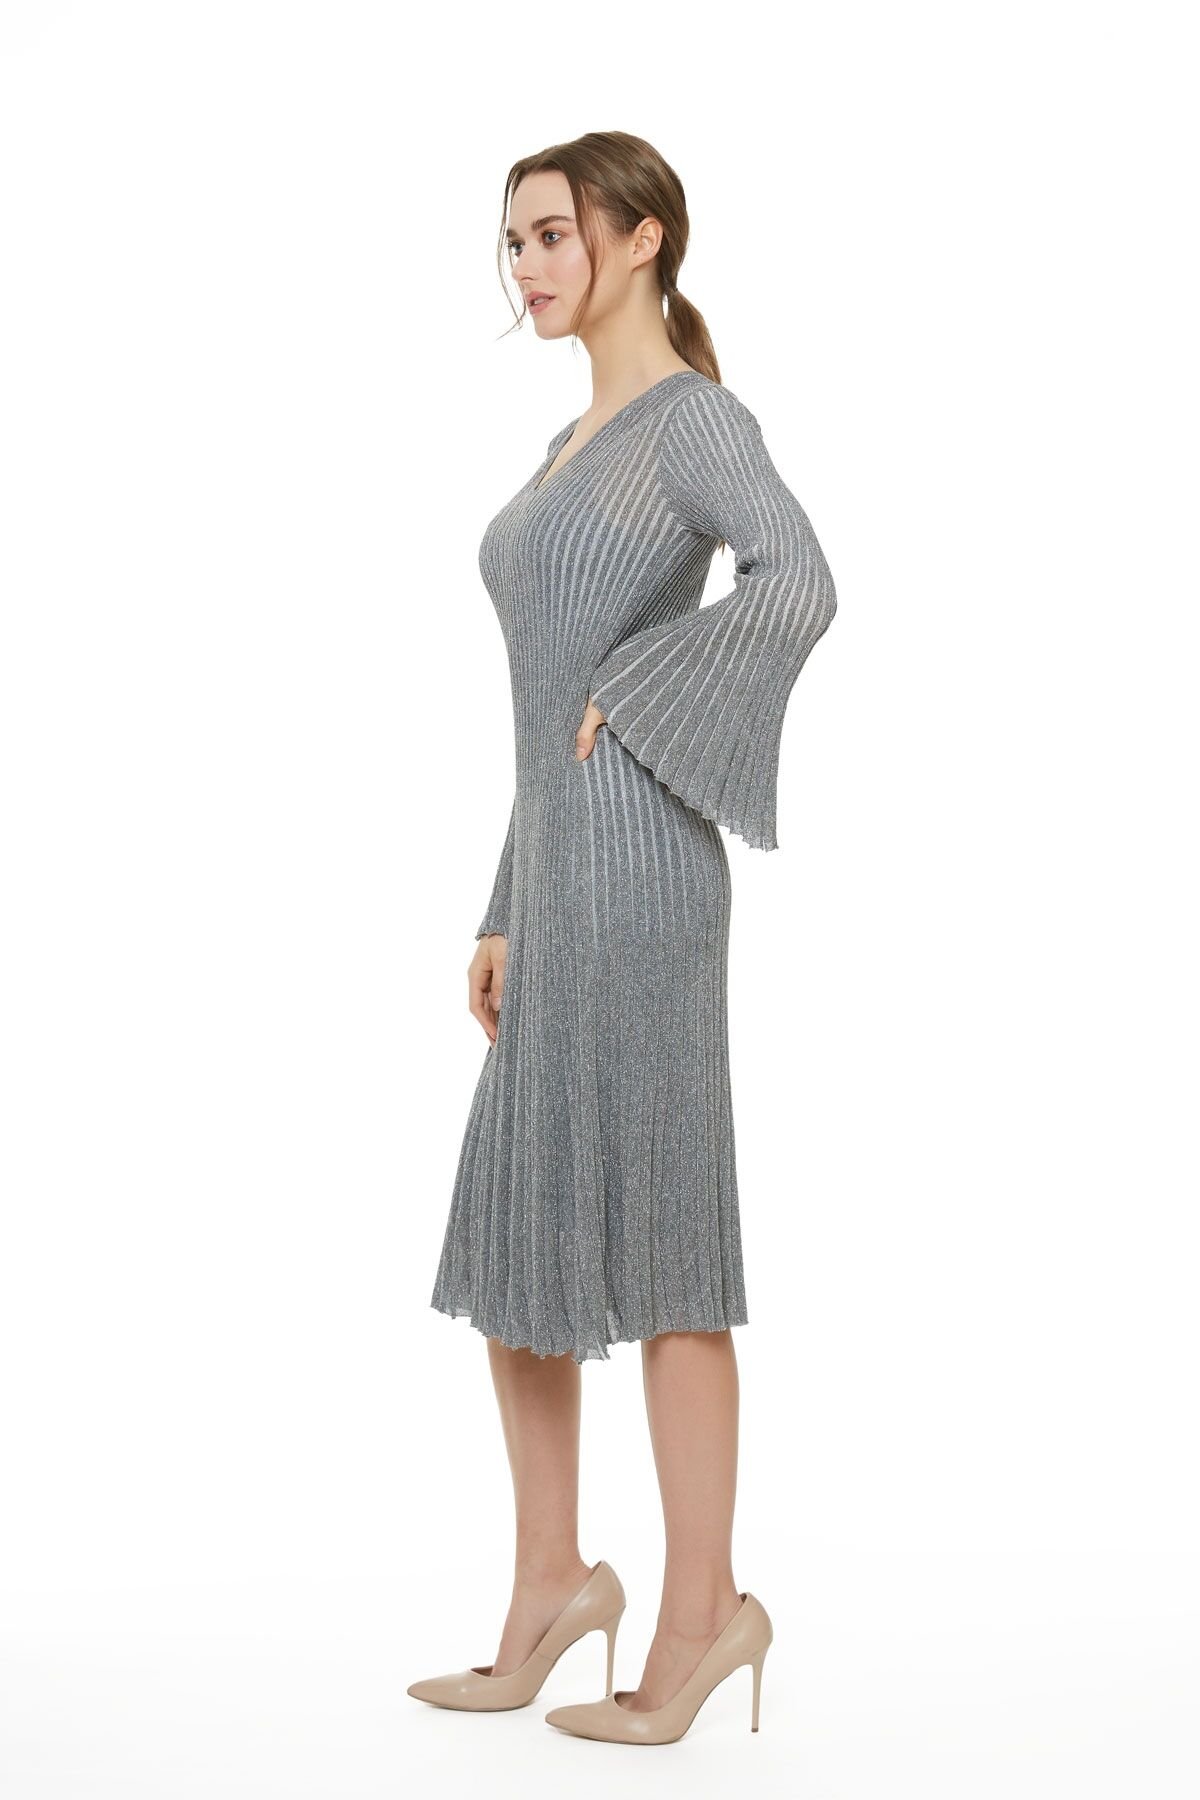 Metallic Striped Knitwear Gray Bell Dress